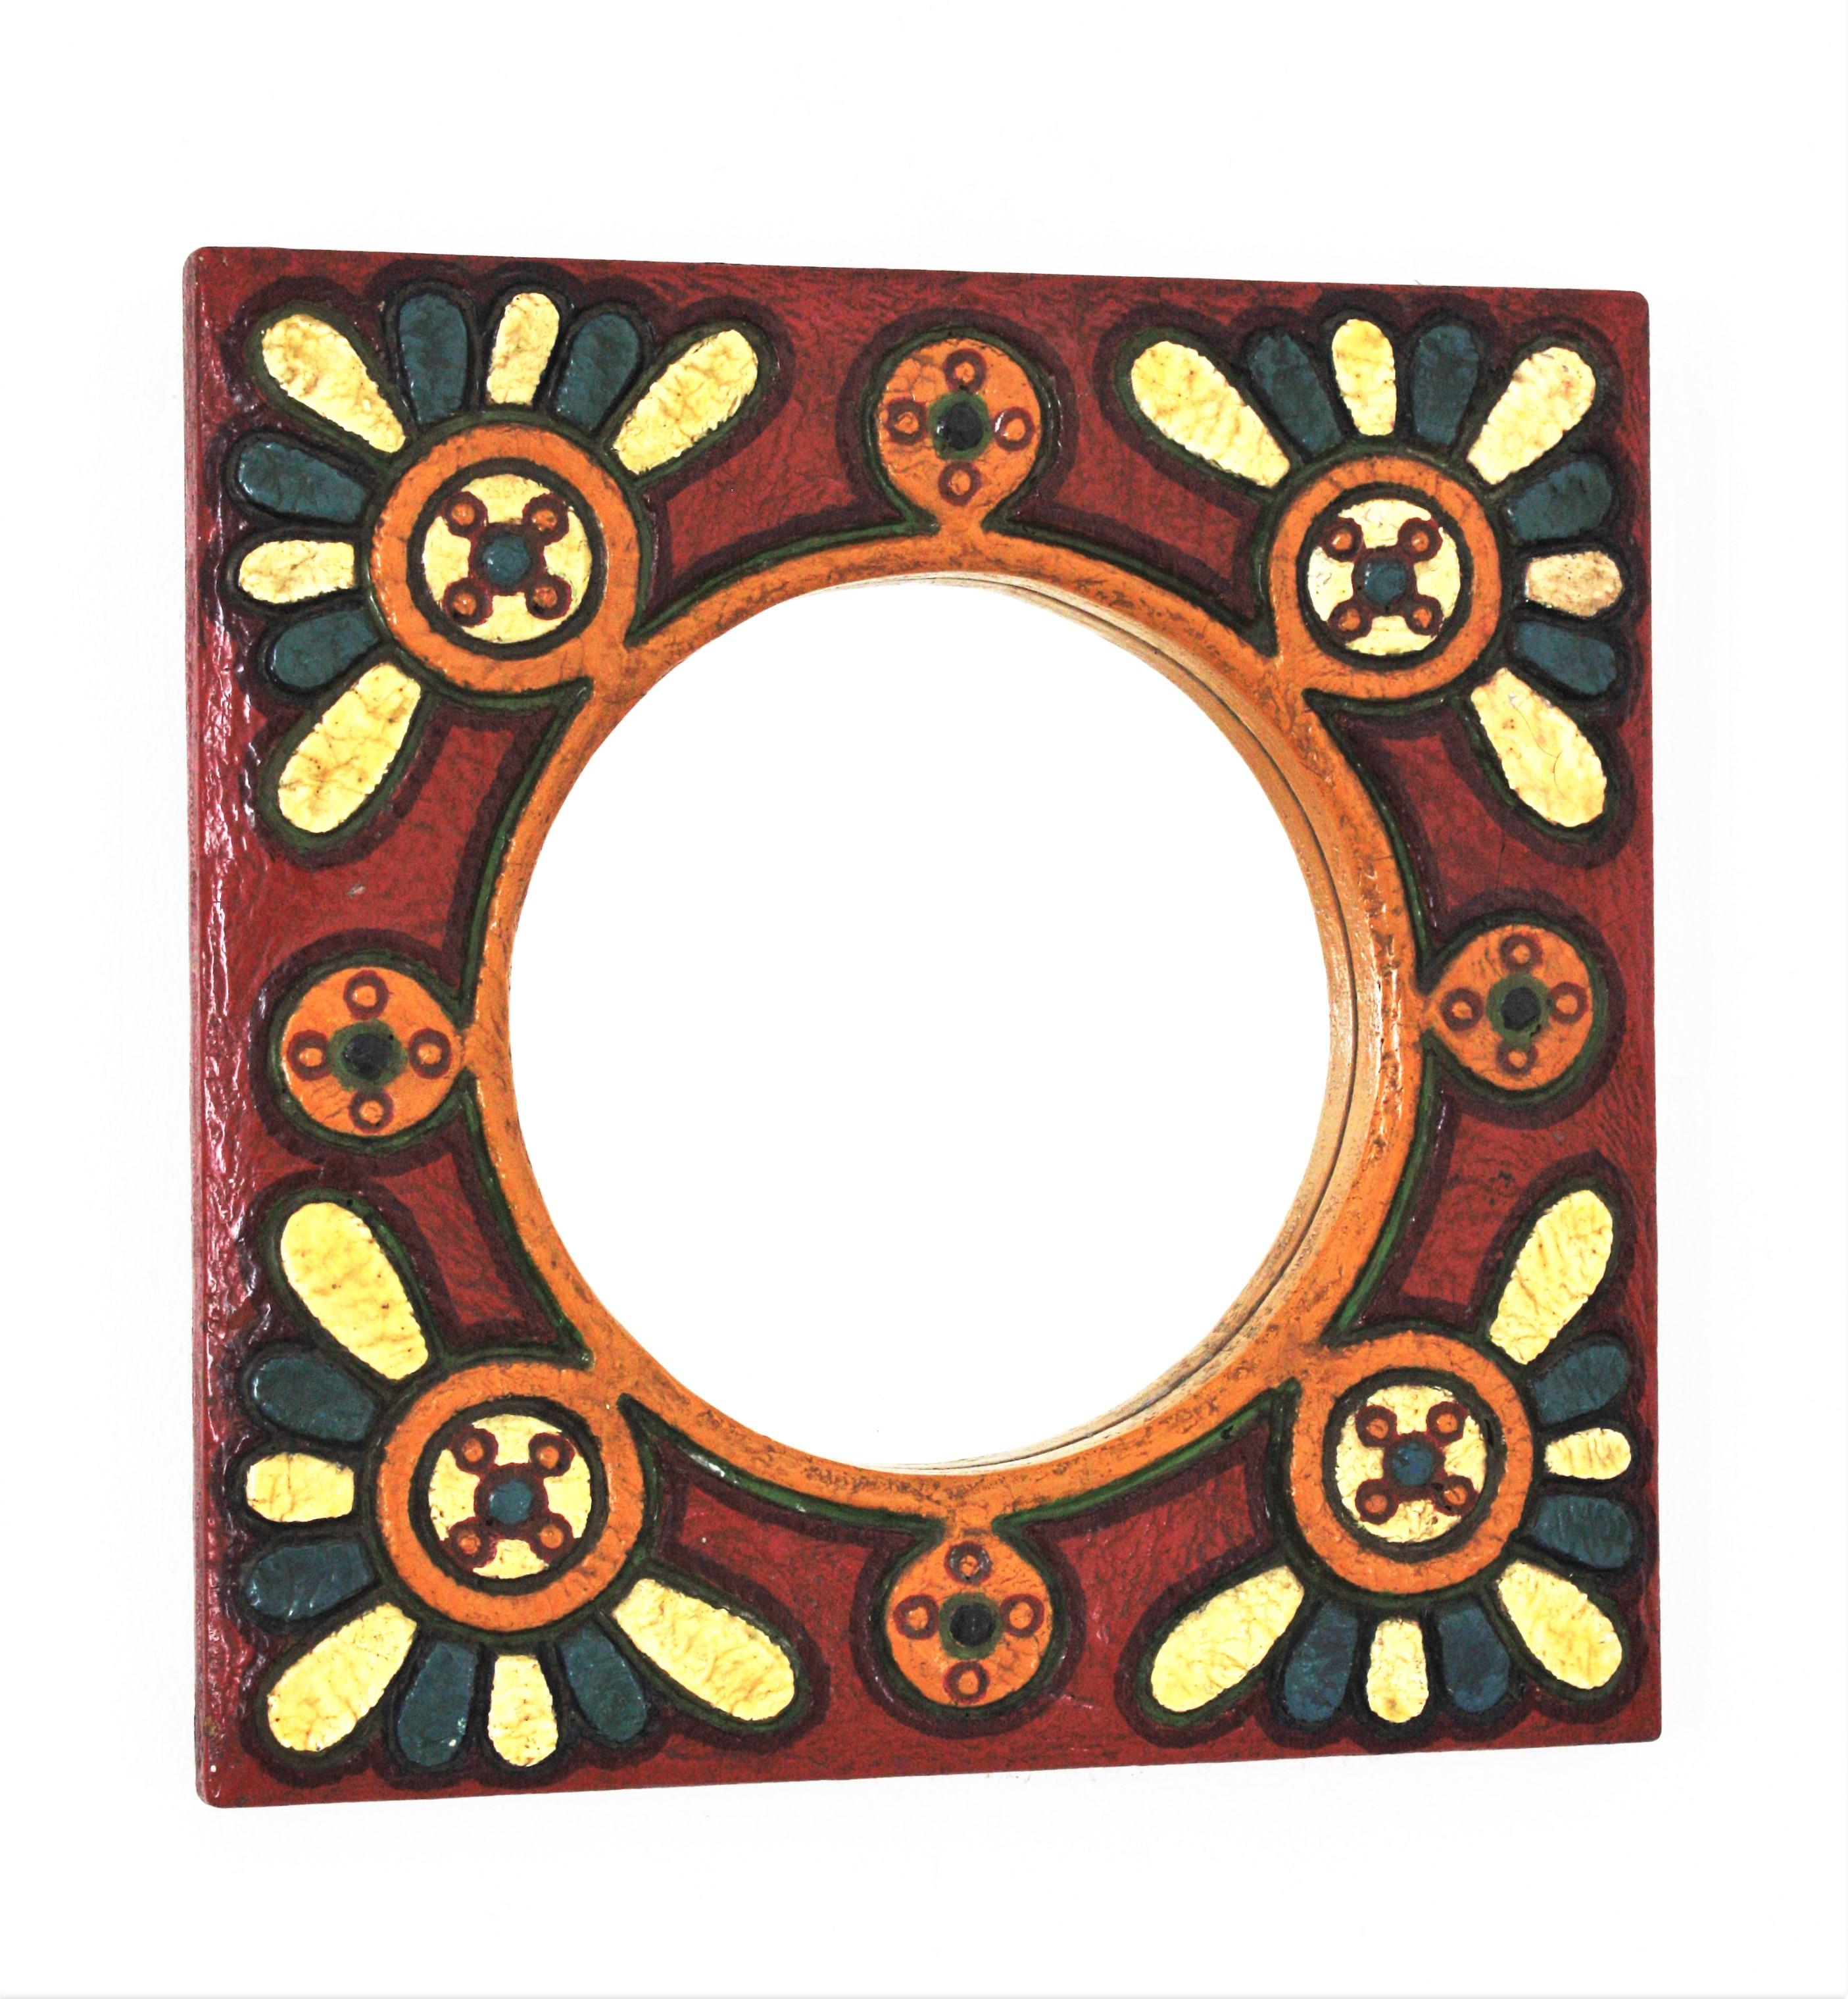 Ein cooler, handbemalter, polychromer Holzspiegel mit floralen Motiven. Spanien, 1960er Jahre
Dieser auffällige Wandspiegel zeichnet sich durch einen quadratischen Rahmen mit Flower-Power-Design aus, der das runde Glas in der Mitte umgibt.
Bunte,